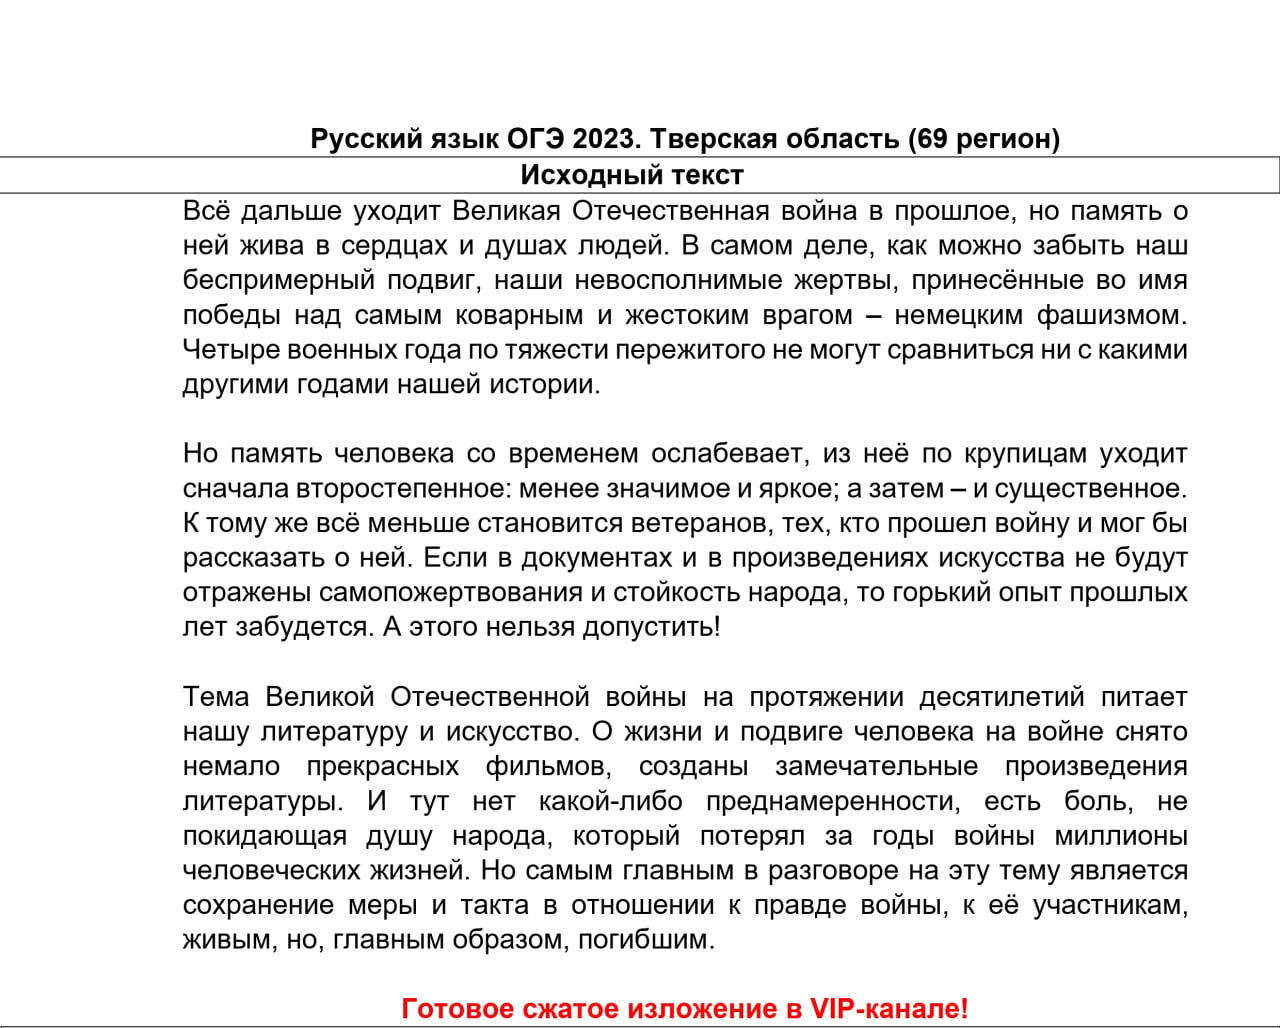 Телеграмм ответы на огэ по русскому языку фото 111